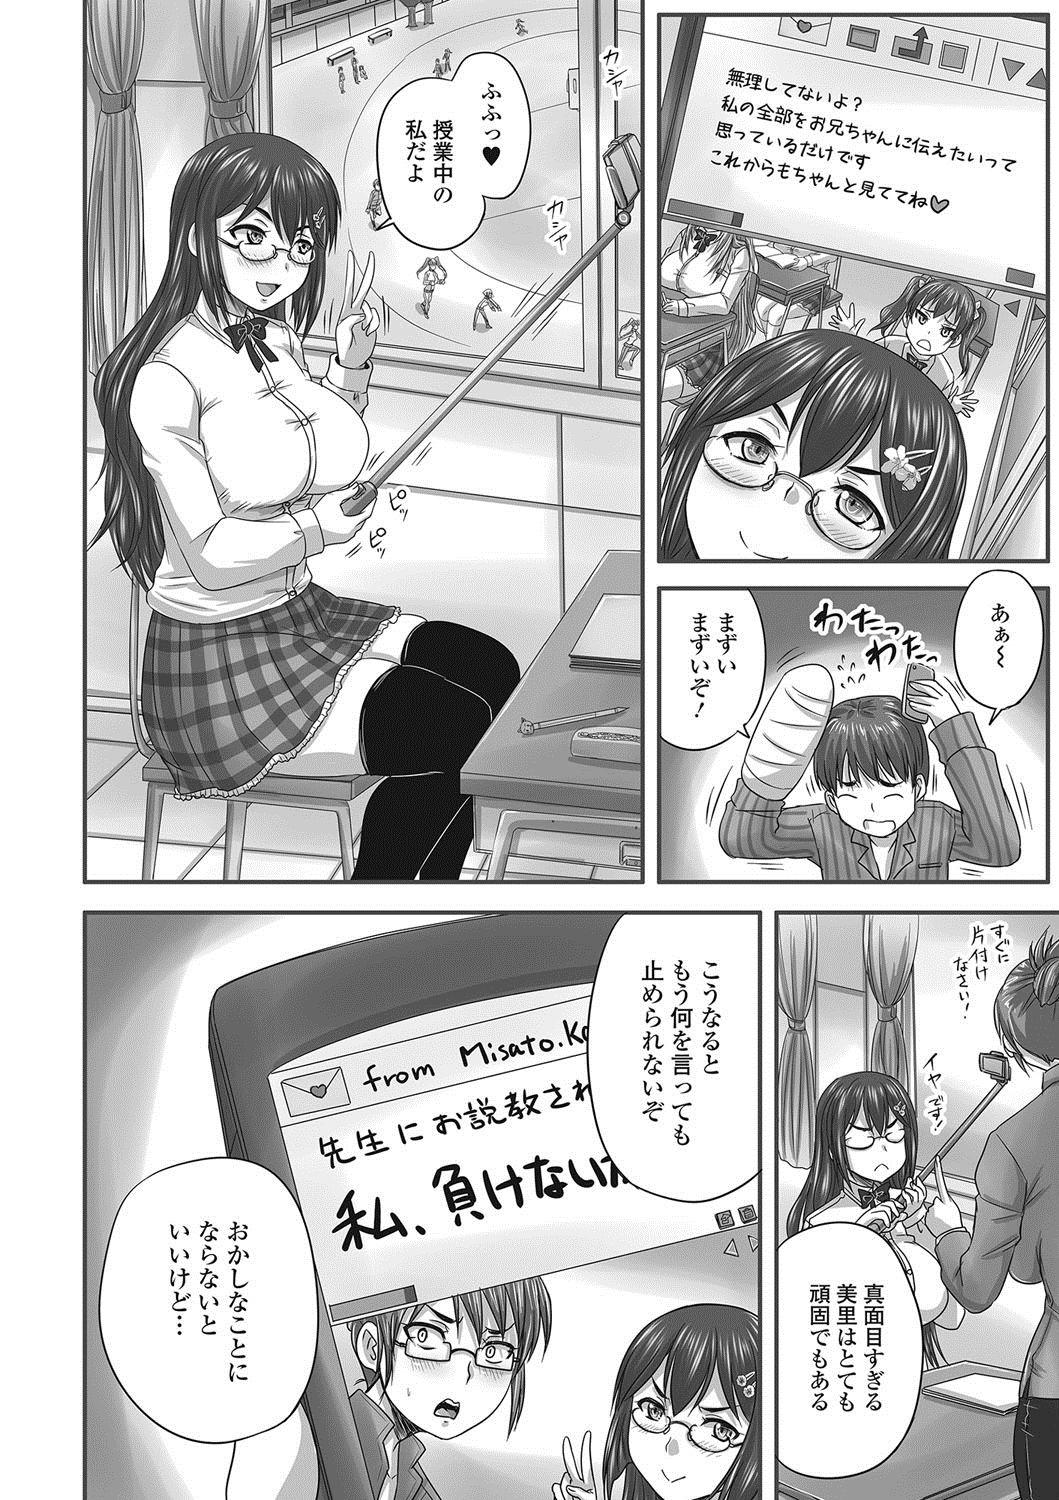 Nasty Nozoite wa Ikenai NEO - Do Not Peep NEO! No Condom - Page 9